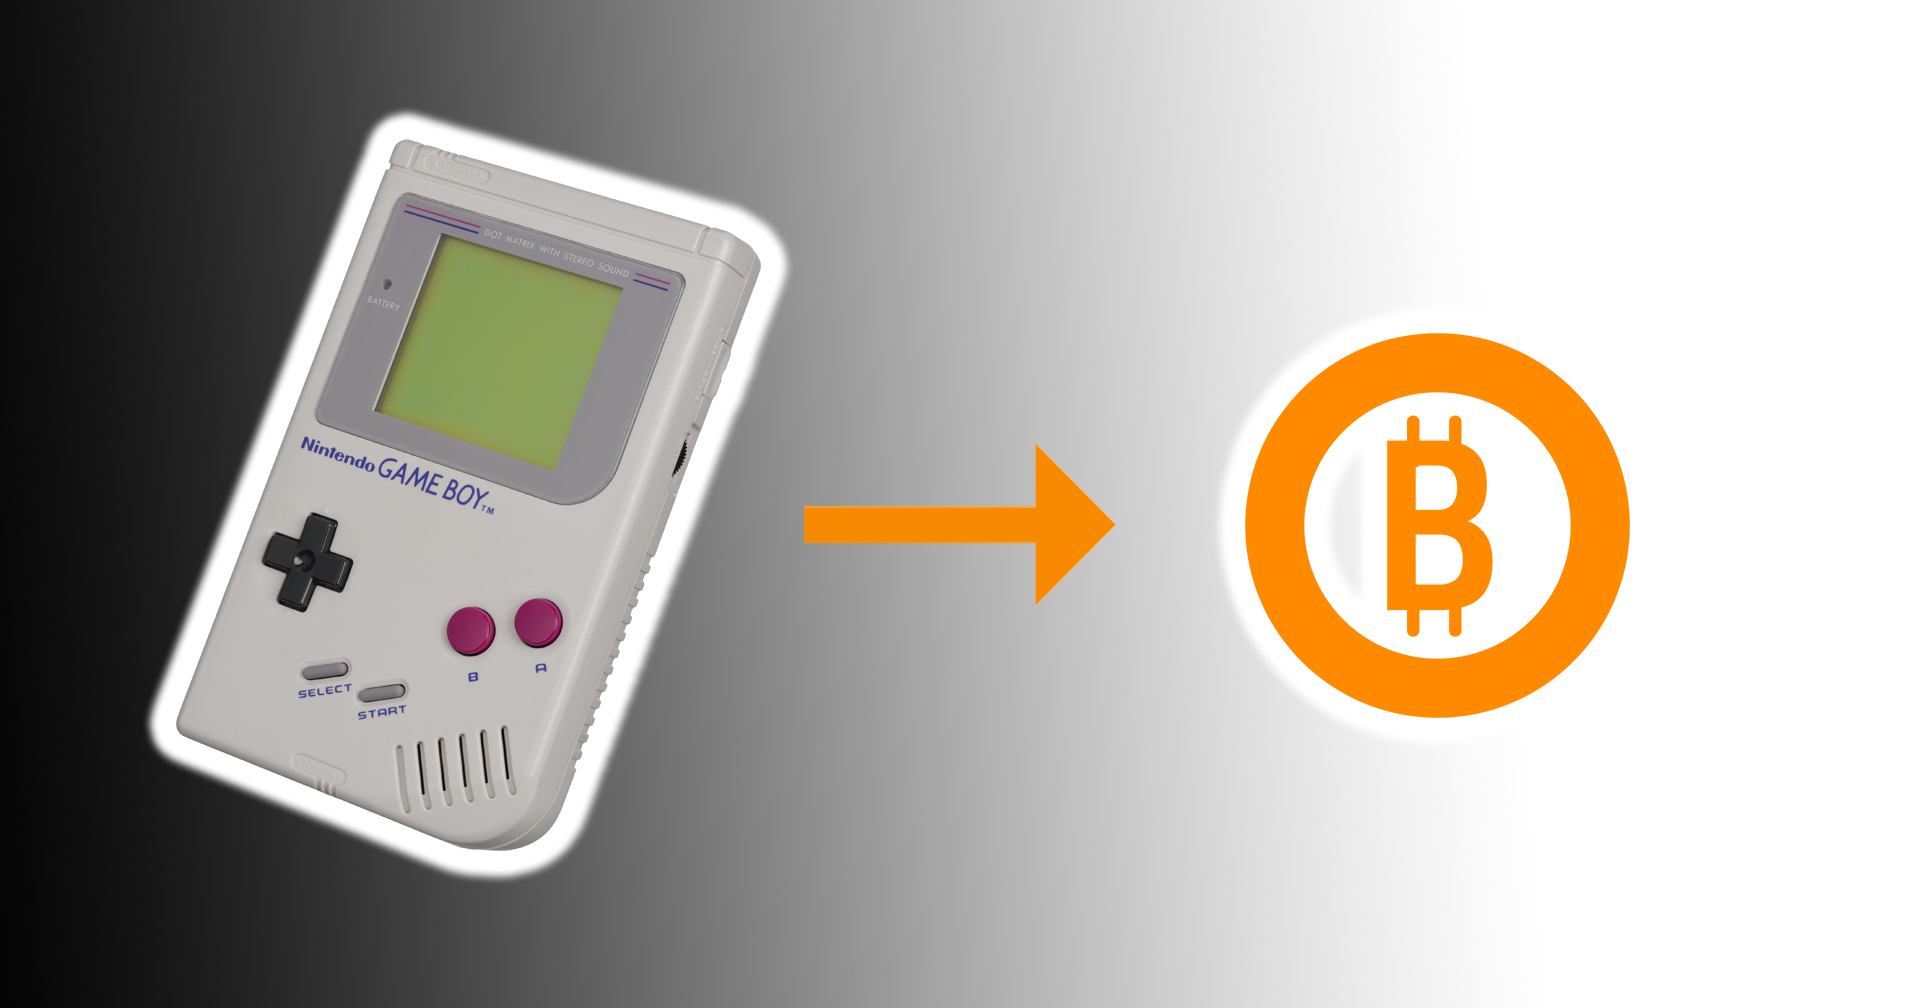 เมื่อ Nintendo Game Boy รุ่นเก๋า ถูกจับมาขุดเหรียญ Bitcoin จะเป็นอย่างไร?!